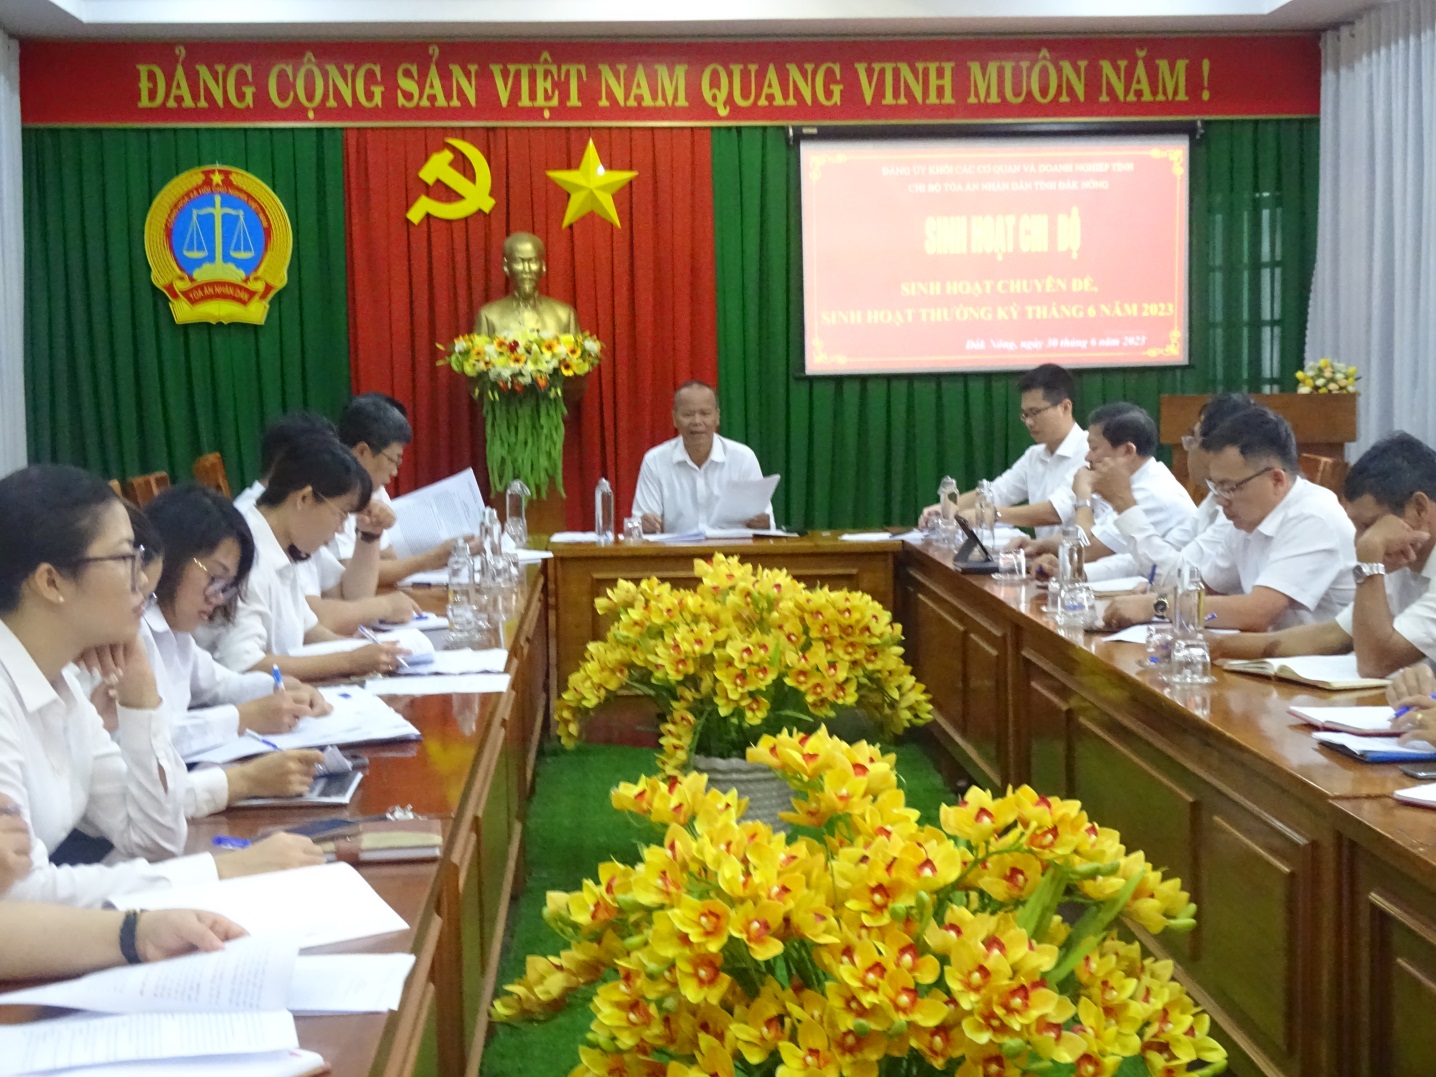 Chi bộ Tòa án nhân dân tỉnh Đắk Nông tổ chức sinh hoạt chuyên đề với chủ đề “Tự soi, tự sửa”